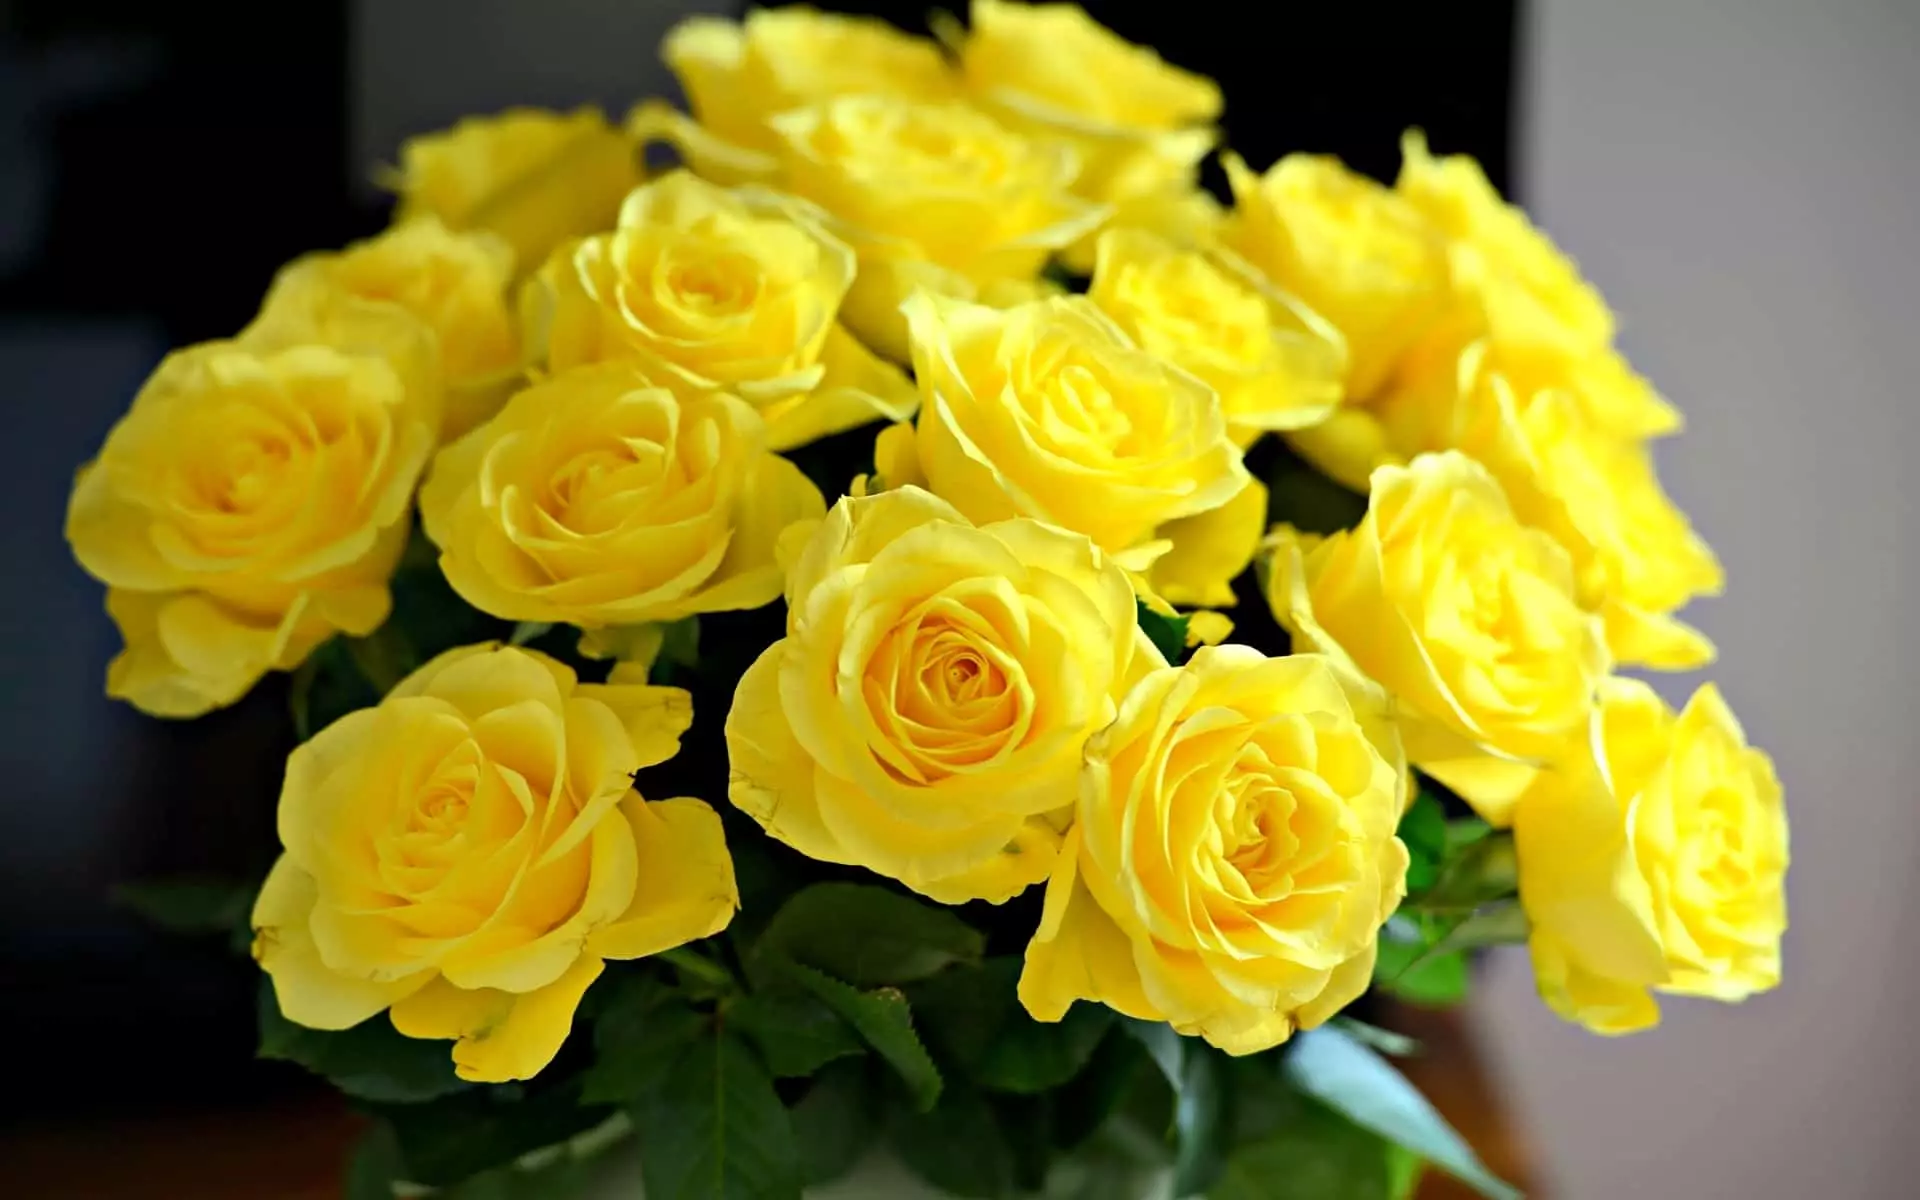 Er det mulig å gi gule roser?